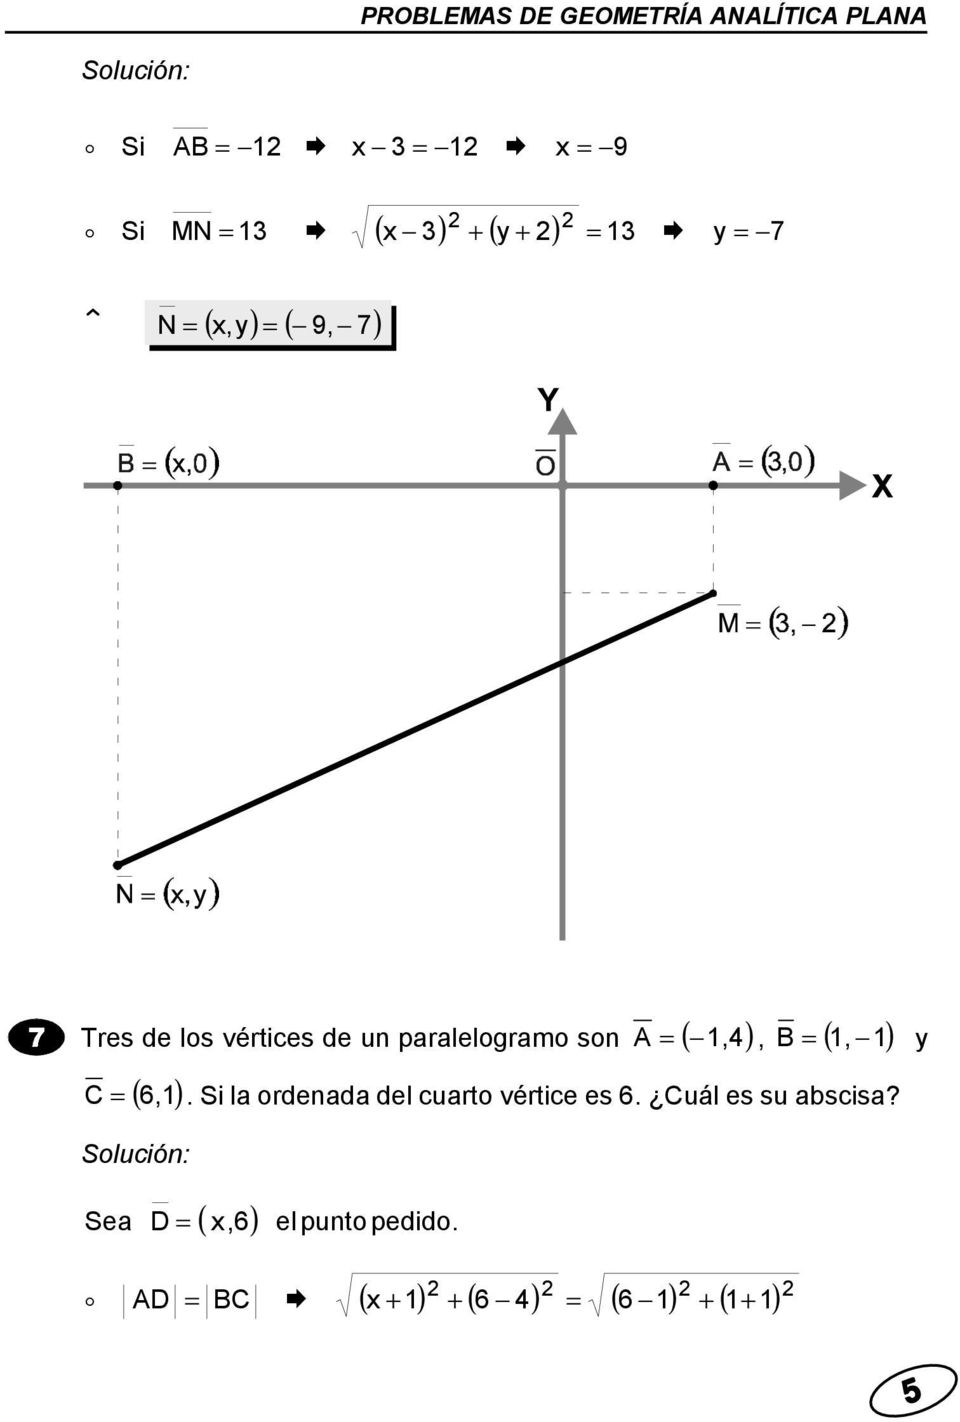 (,), B (, ) C ( 6,) Solución. Si l ordend del curto vértice es 6.